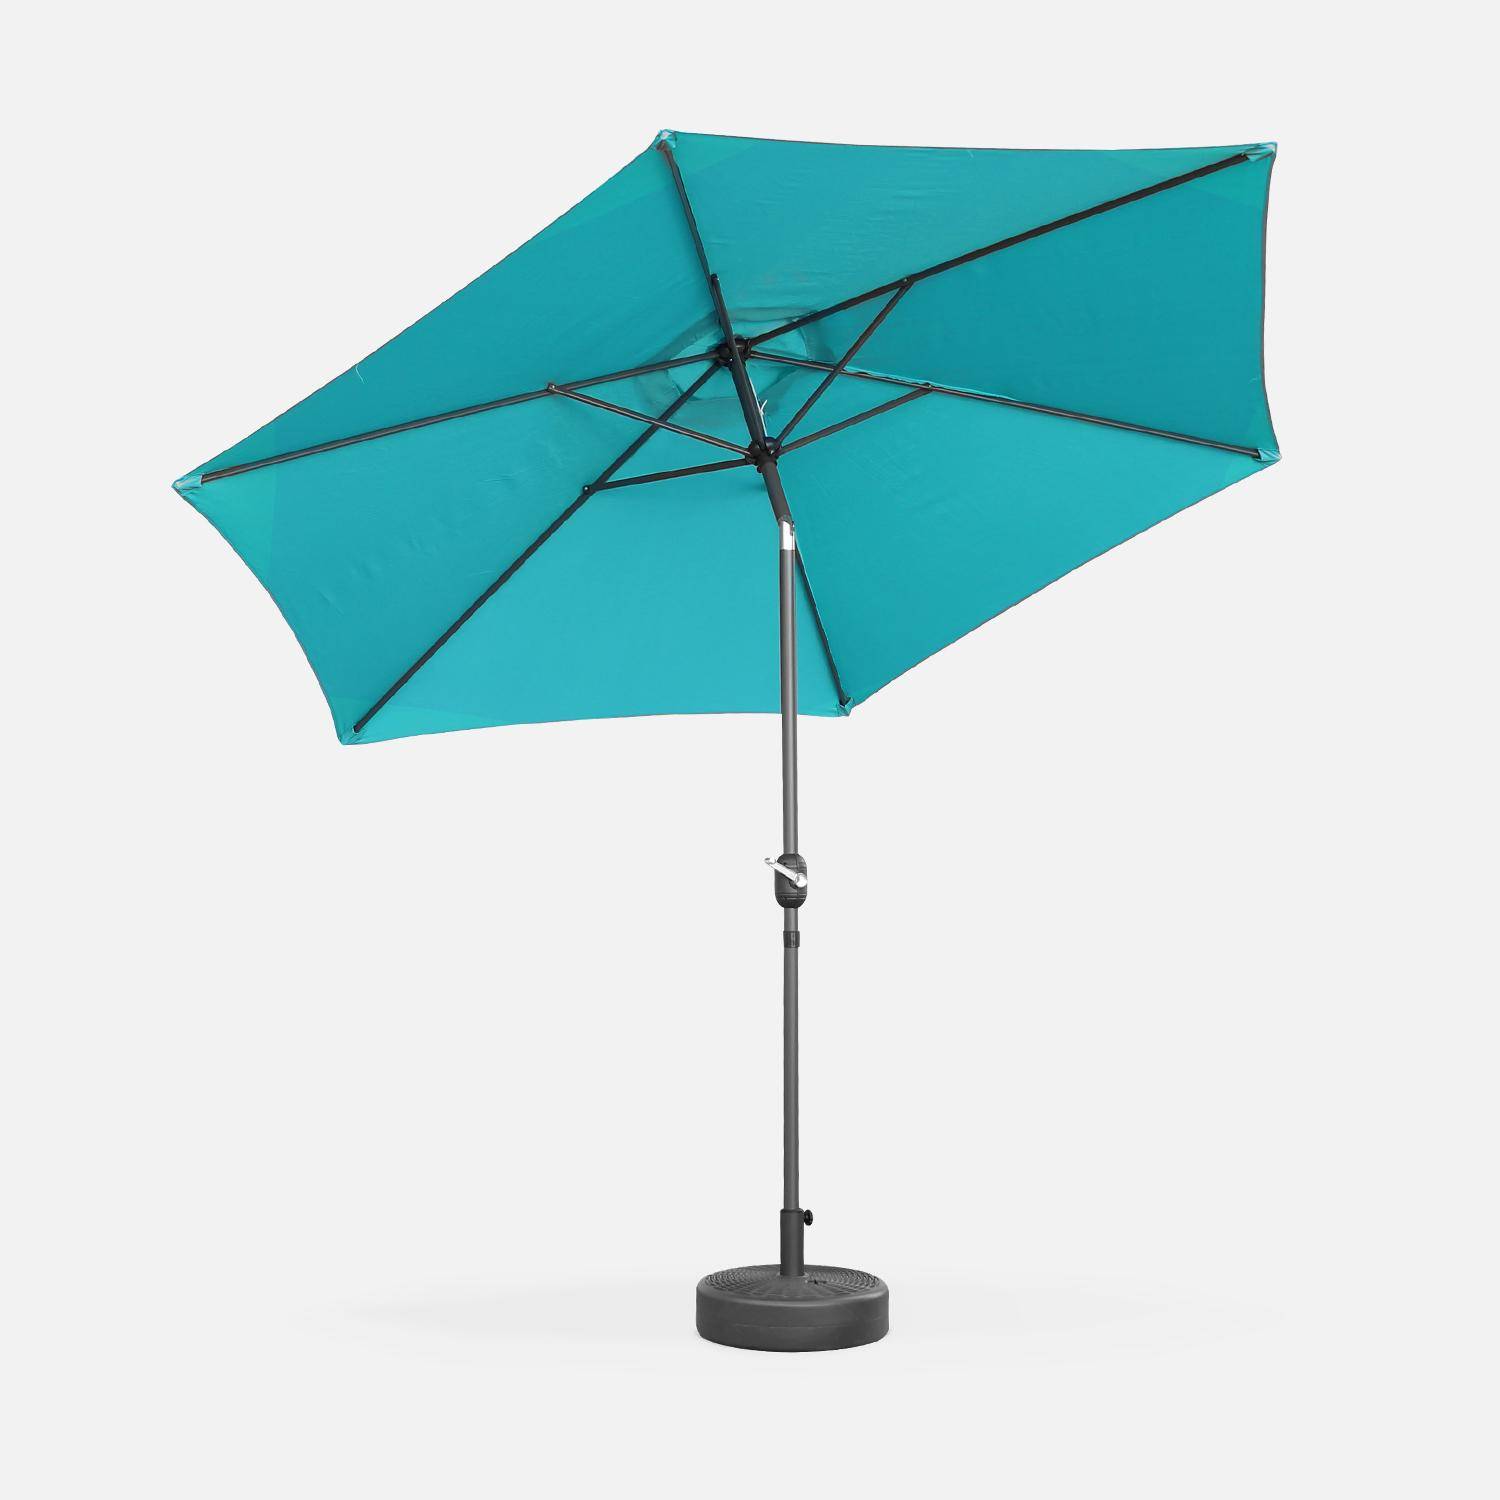 Parasol de jardín, parasol rojo, mástil central, inclinable, Turquesa, 300cm, Touquet,sweeek,Photo4